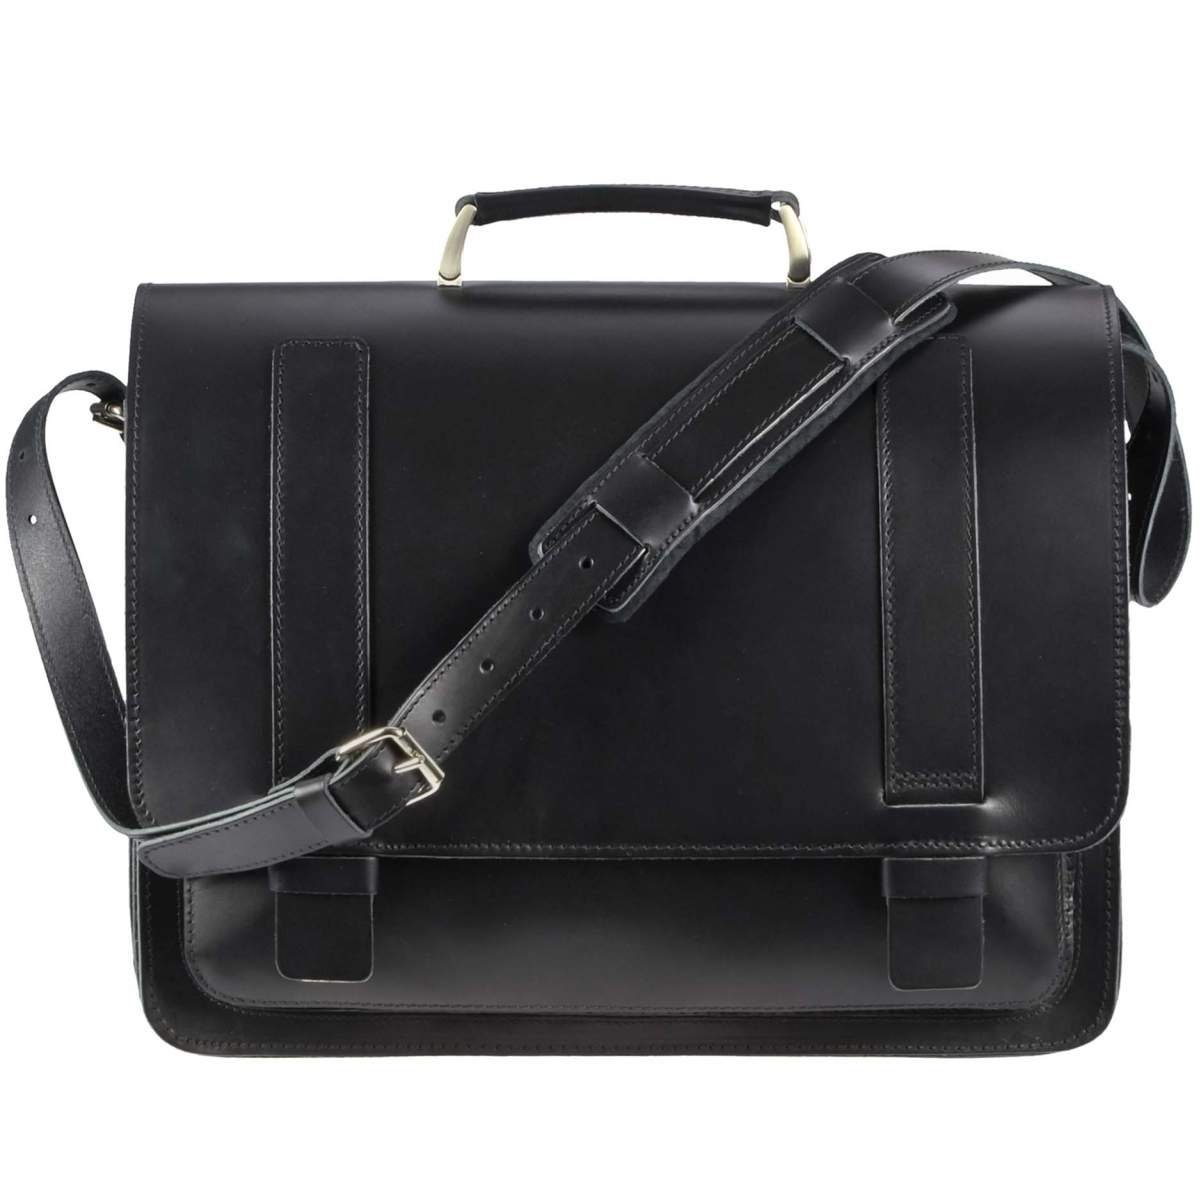 Ruitertassen Aktentasche Classic, 42 cm Lehrertasche mit 3 Fächern, Schultasche, rustikales Leder schwarz